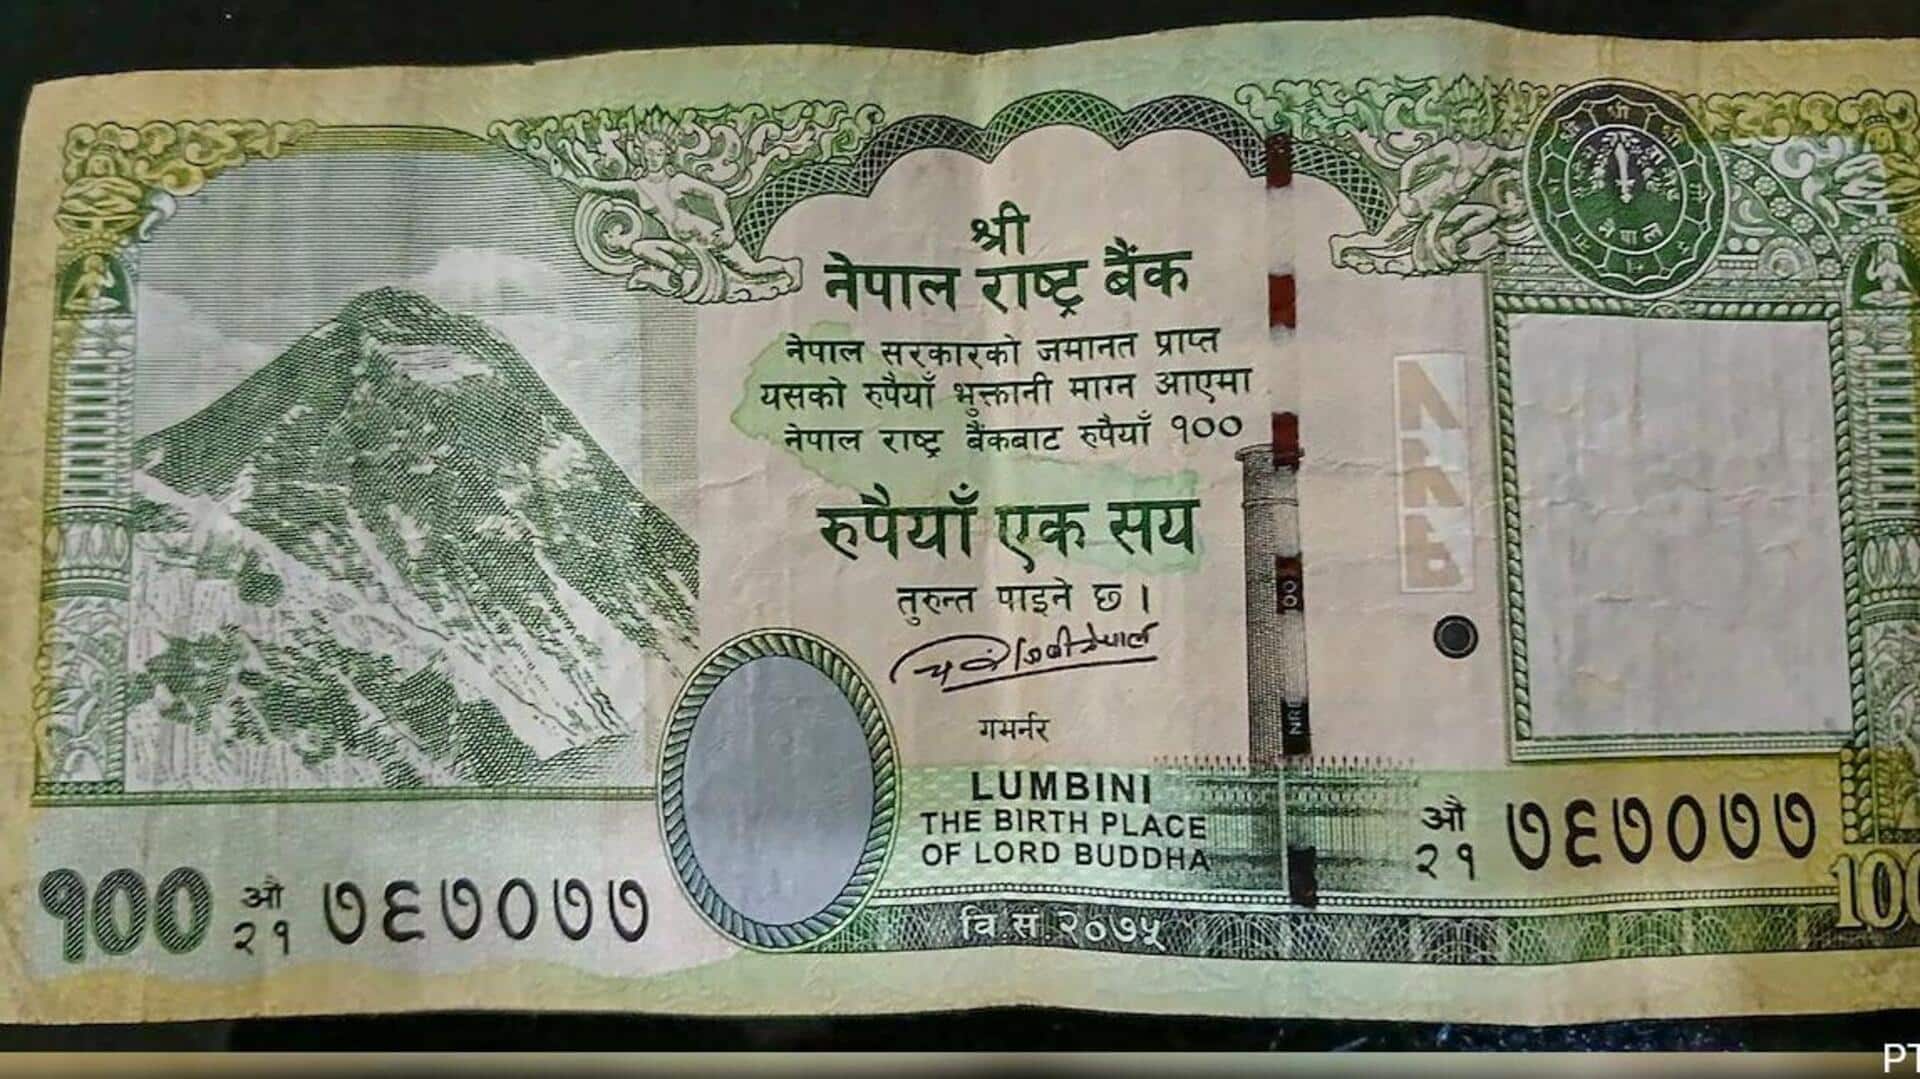 Nepal-Hundred Rupees Note-New places: మూడు కొత్త భూభాగాలతో వంద నోటును ముద్రించనున్న నేపాల్​....అభ్యంతరం తెలిపిన భారత్